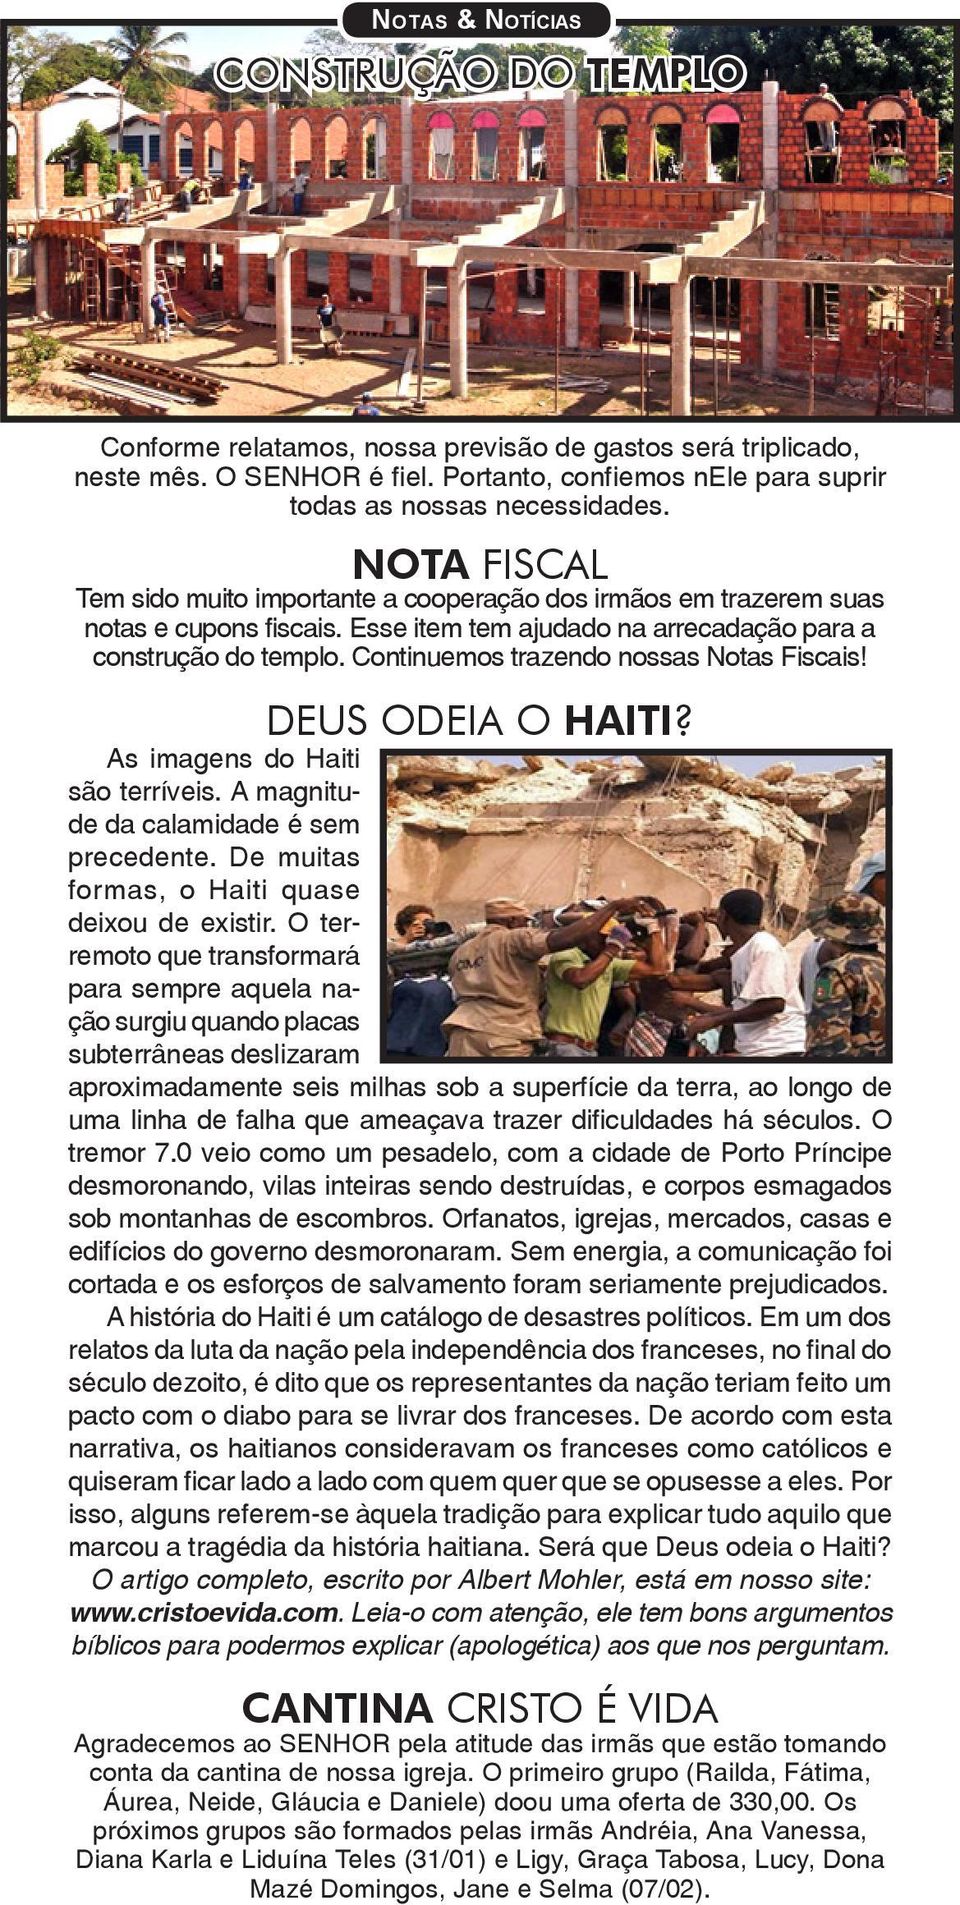 Continuemos trazendo nossas Notas Fiscais! DEUS ODEIA O HAITI? As imagens do Haiti são terríveis. A magnitude da calamidade é sem precedente. De muitas formas, o Haiti quase deixou de existir.